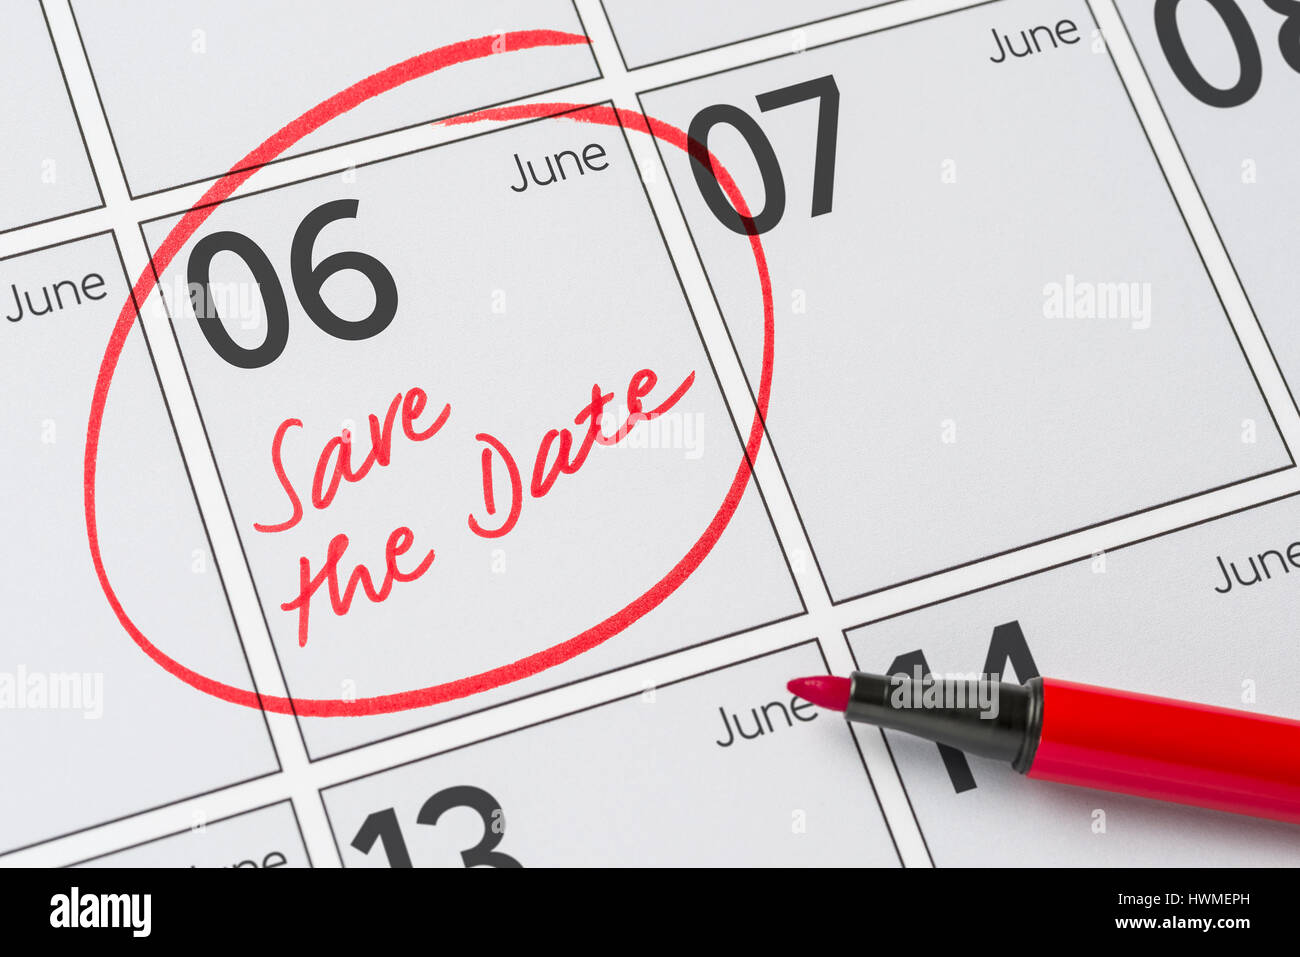 Enregistrer la date inscrite sur un calendrier - juin 06 Banque D'Images